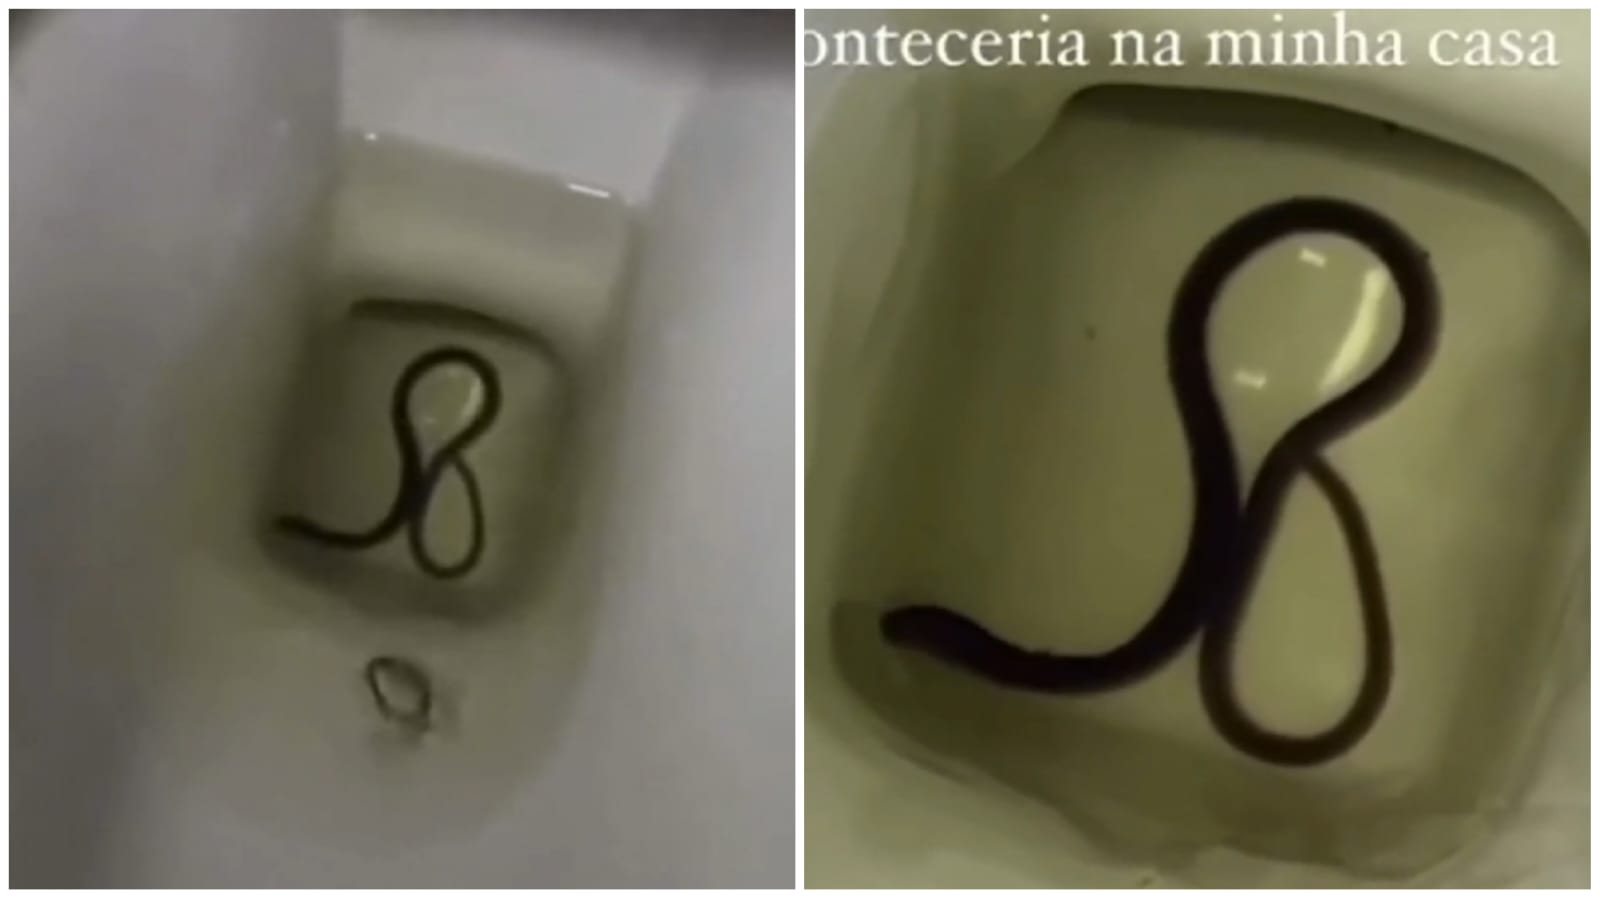 Cobra foi encontrada em vaso sanitário - Foto: Reprodução/Redes Sociais